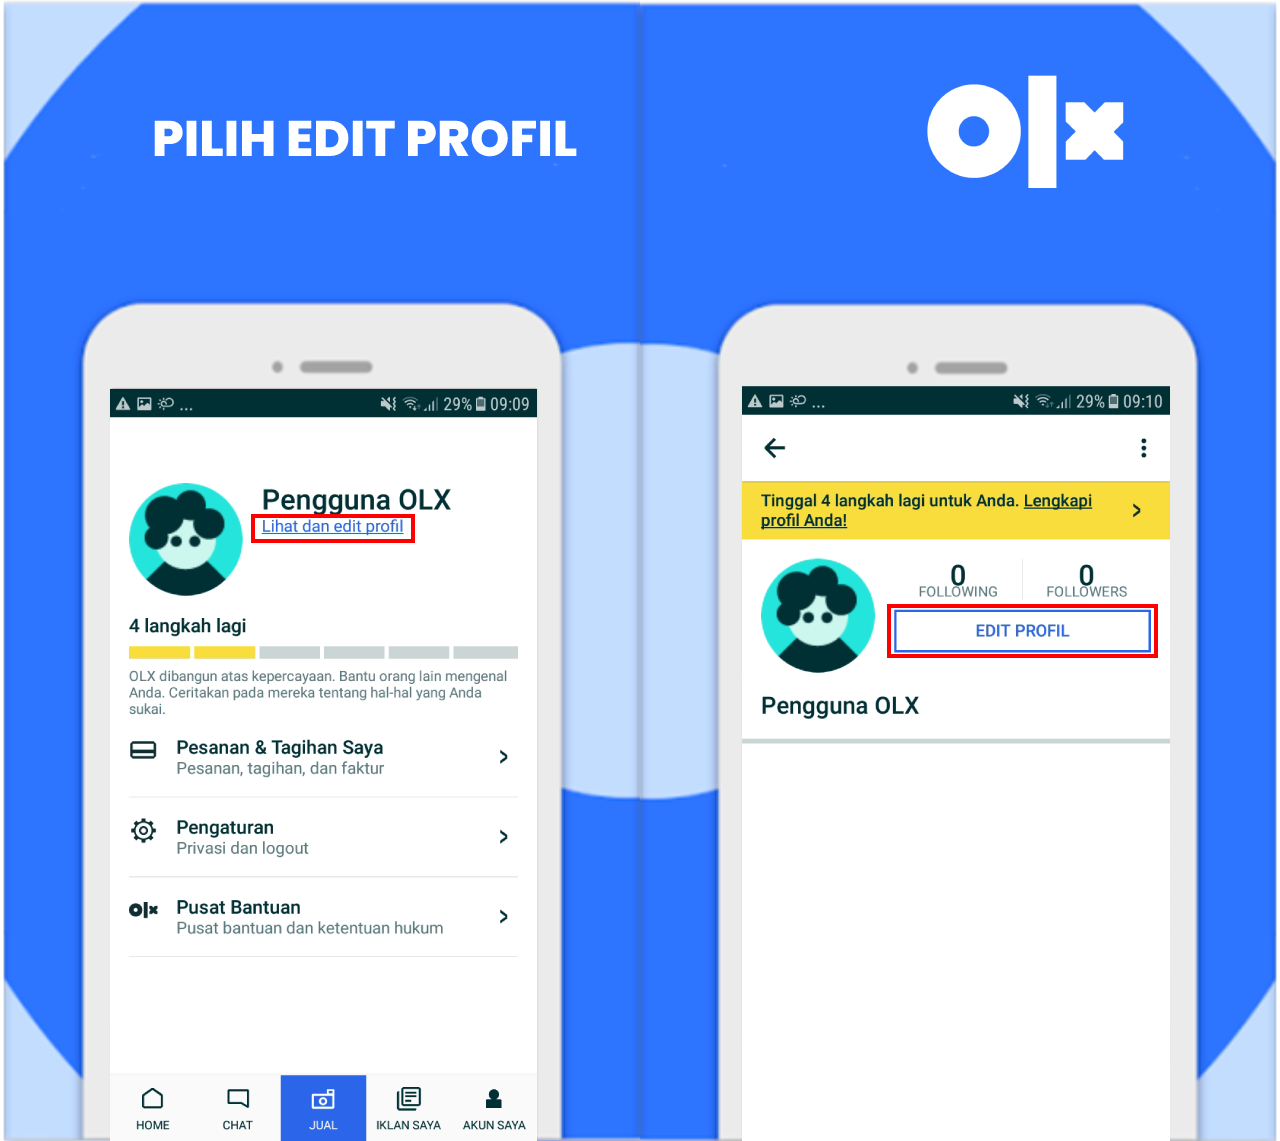 Pilih_edit_profil.png